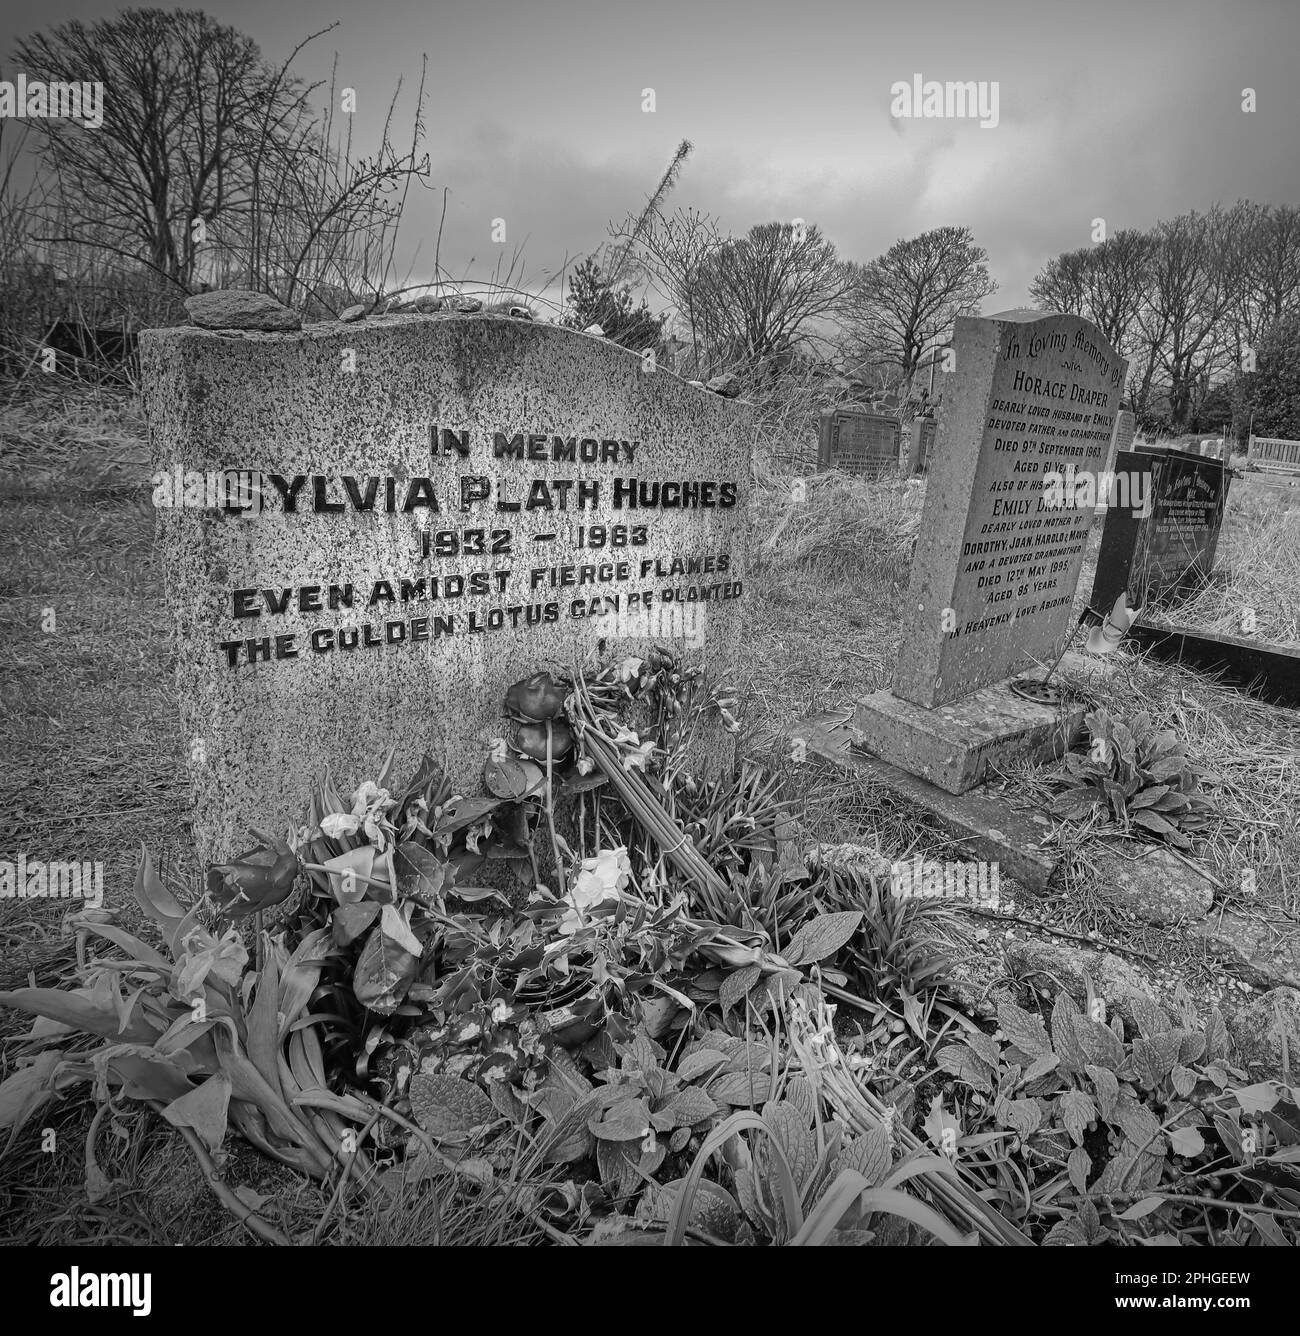 Pierre tombale de Sylvia Plath Hughes, 1932-1963, pierre tombale en mémoire poète américain, même au milieu des flammes féroces, le lotus doré peut être planté Banque D'Images